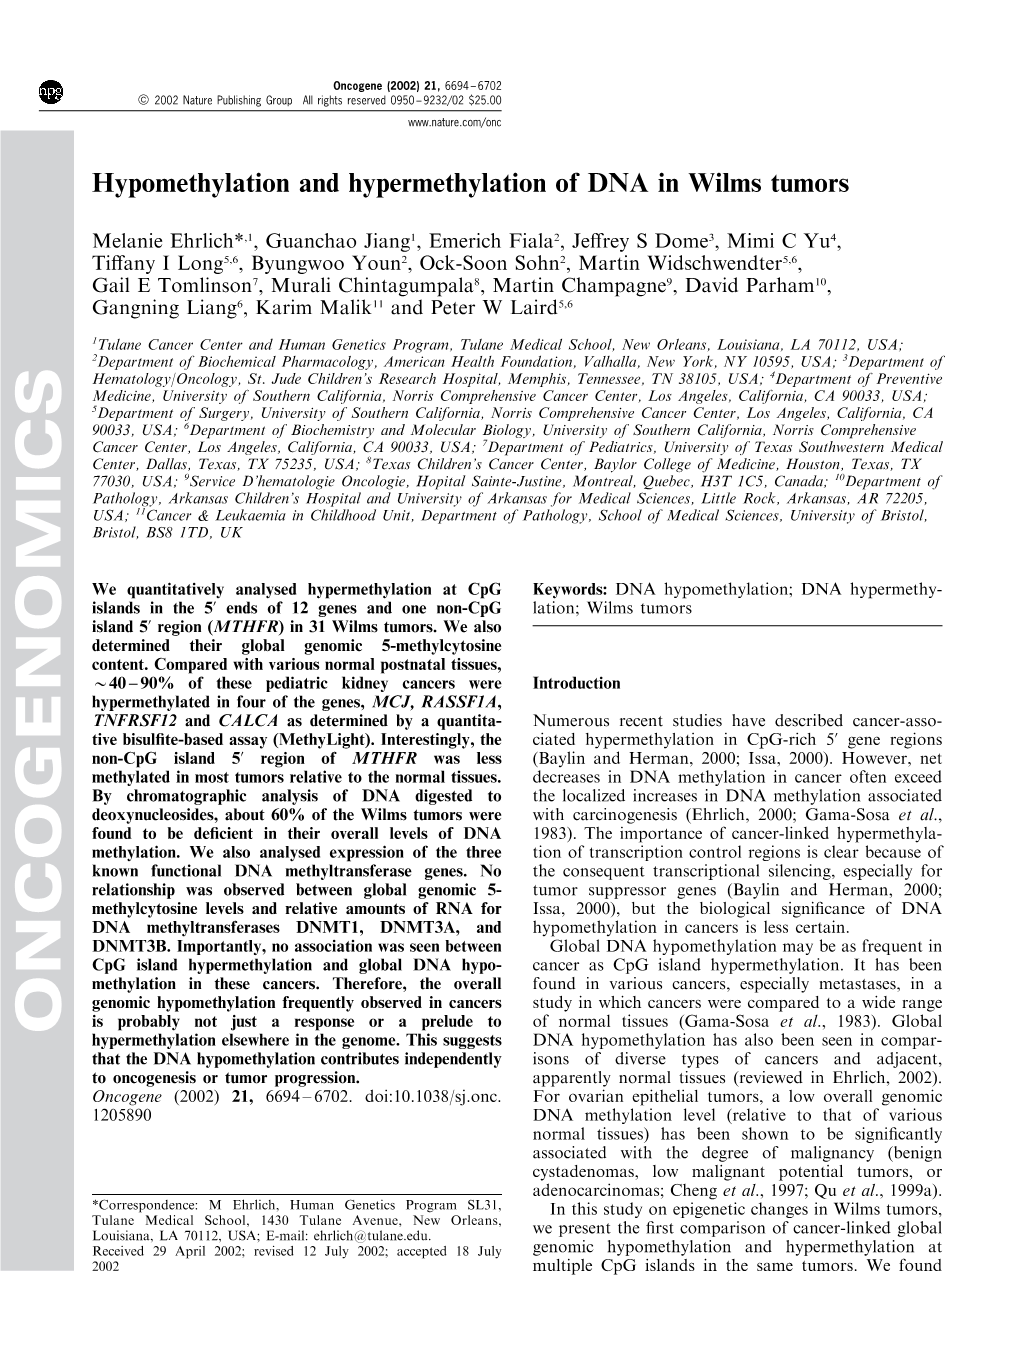 Hypomethylation and Hypermethylation of DNA in Wilms Tumors